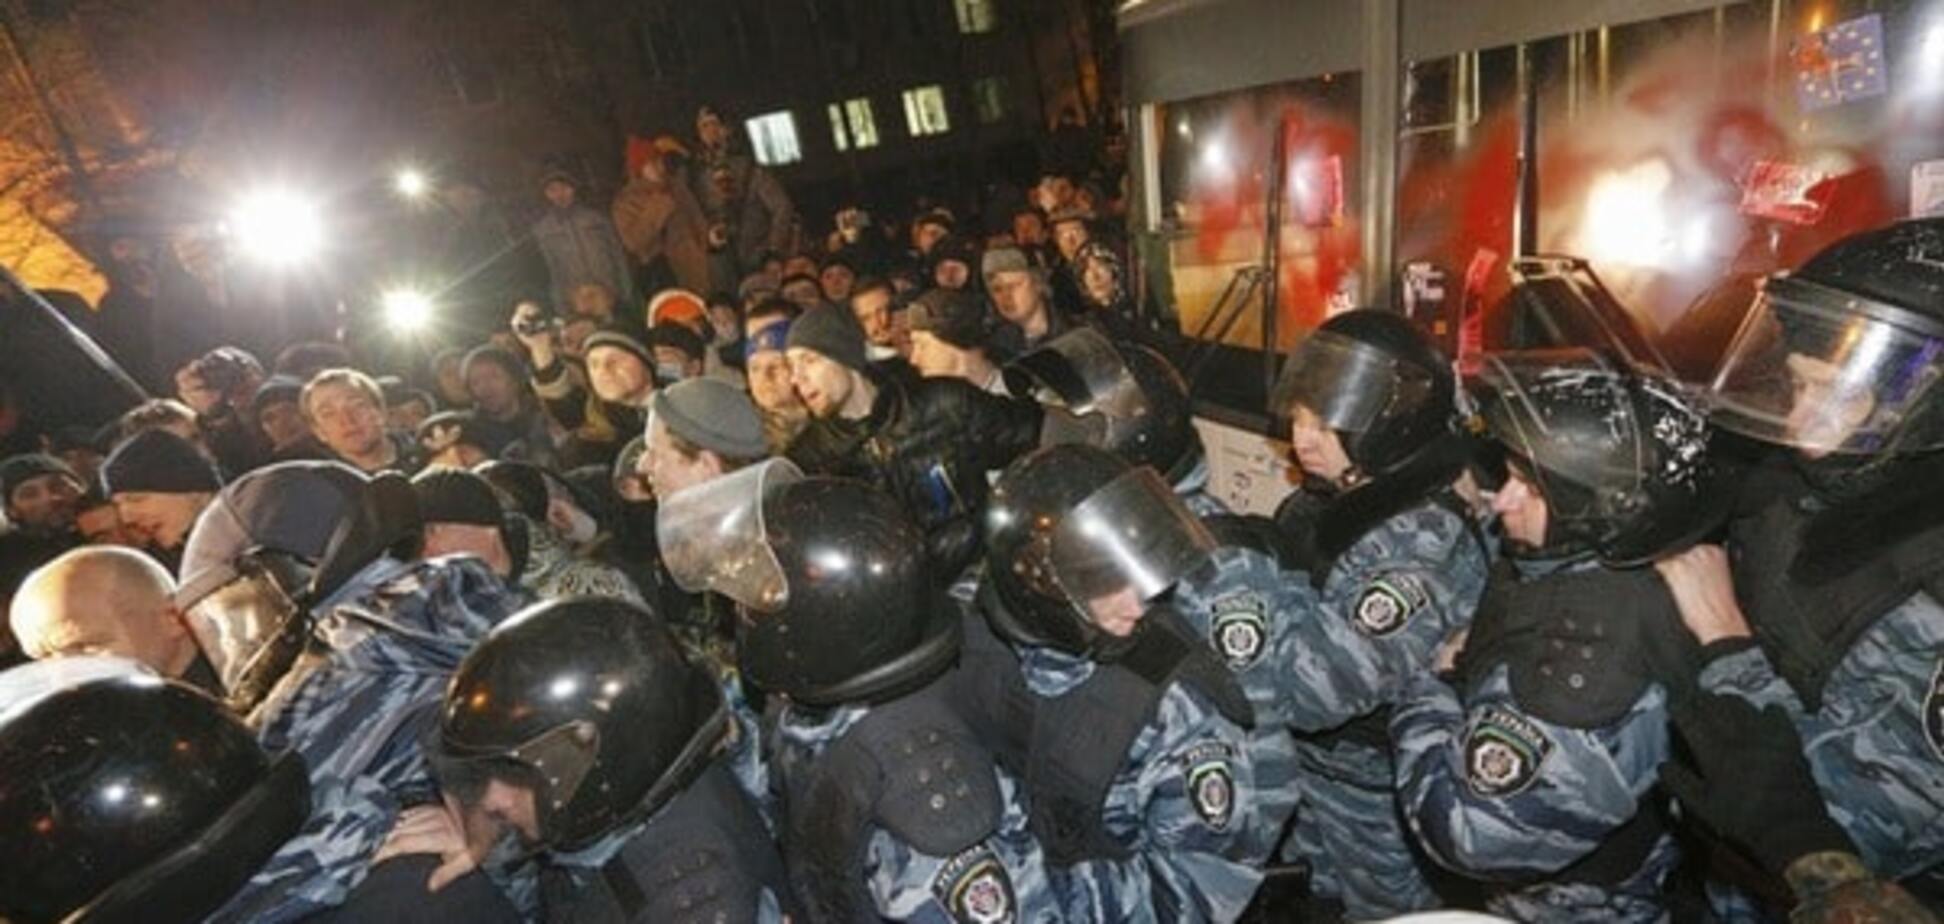 Разгон Майдана: избивавшие студентов 'беркутовцы' до сих пор работают в МВД - адвокат